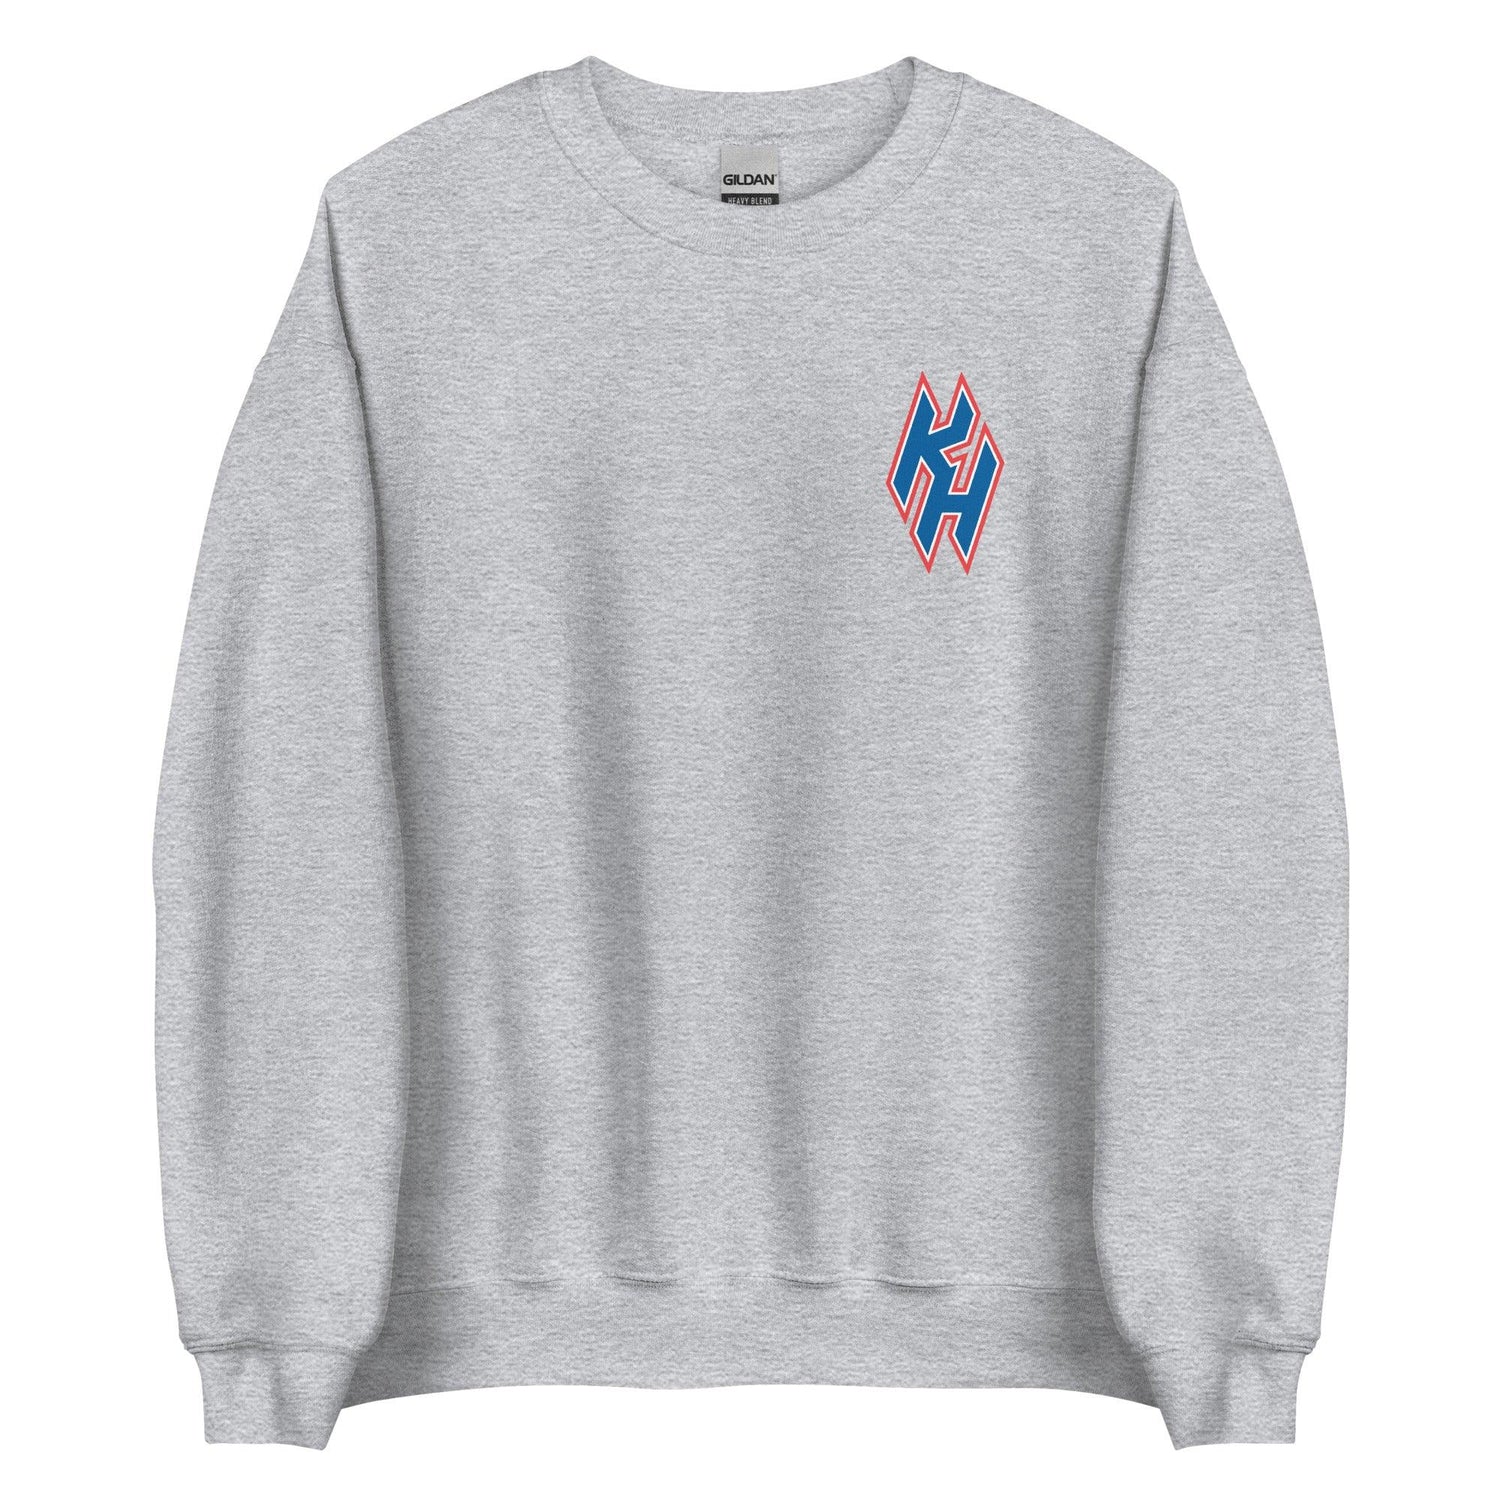 Kody Hoese "Essential" Sweatshirt - Fan Arch